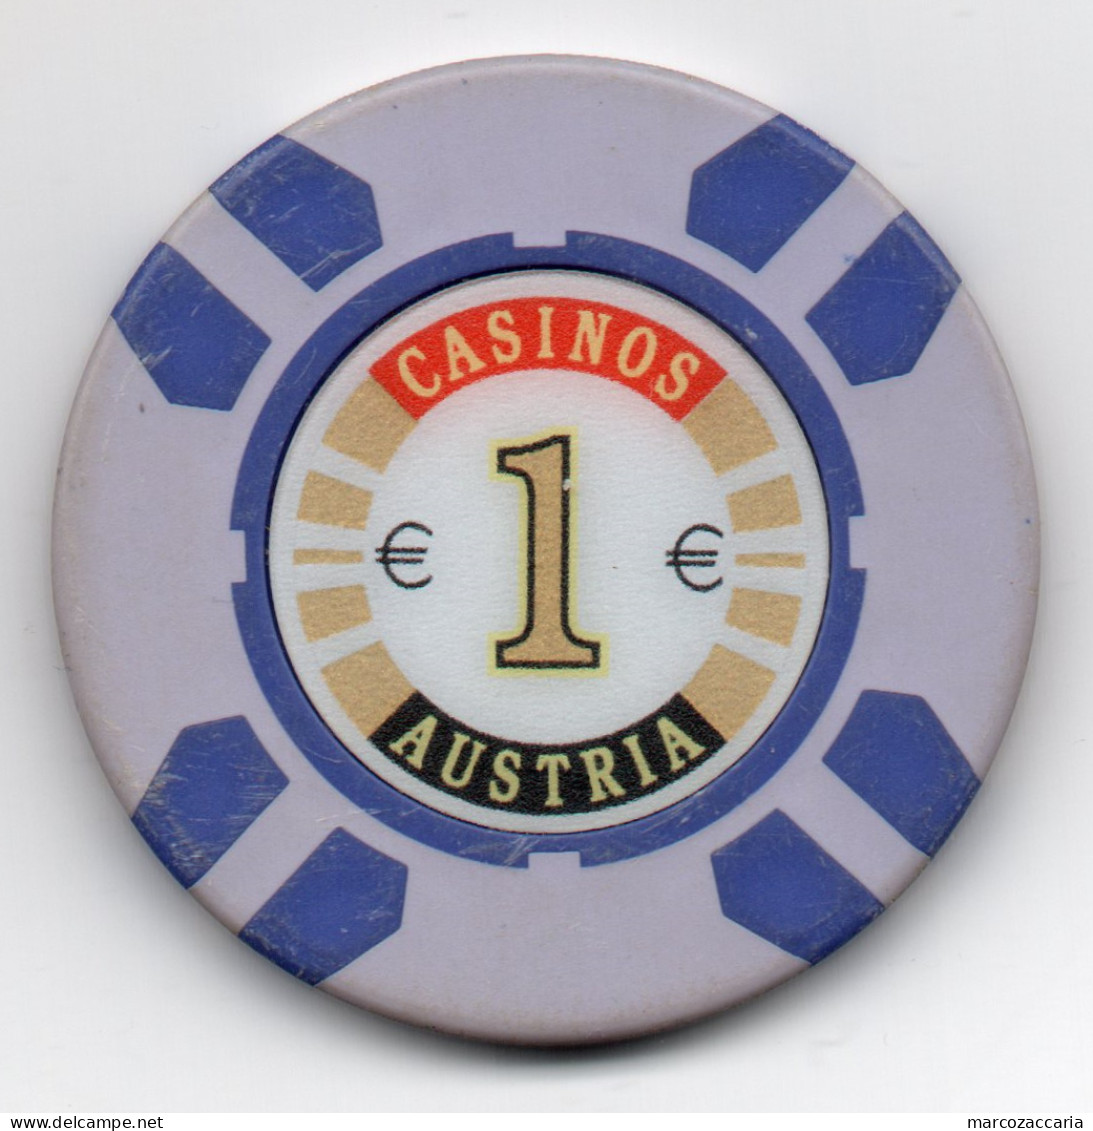 GETTONE, TOKEN, FICHE CASINO' AUSTRIA 1 € - Casino